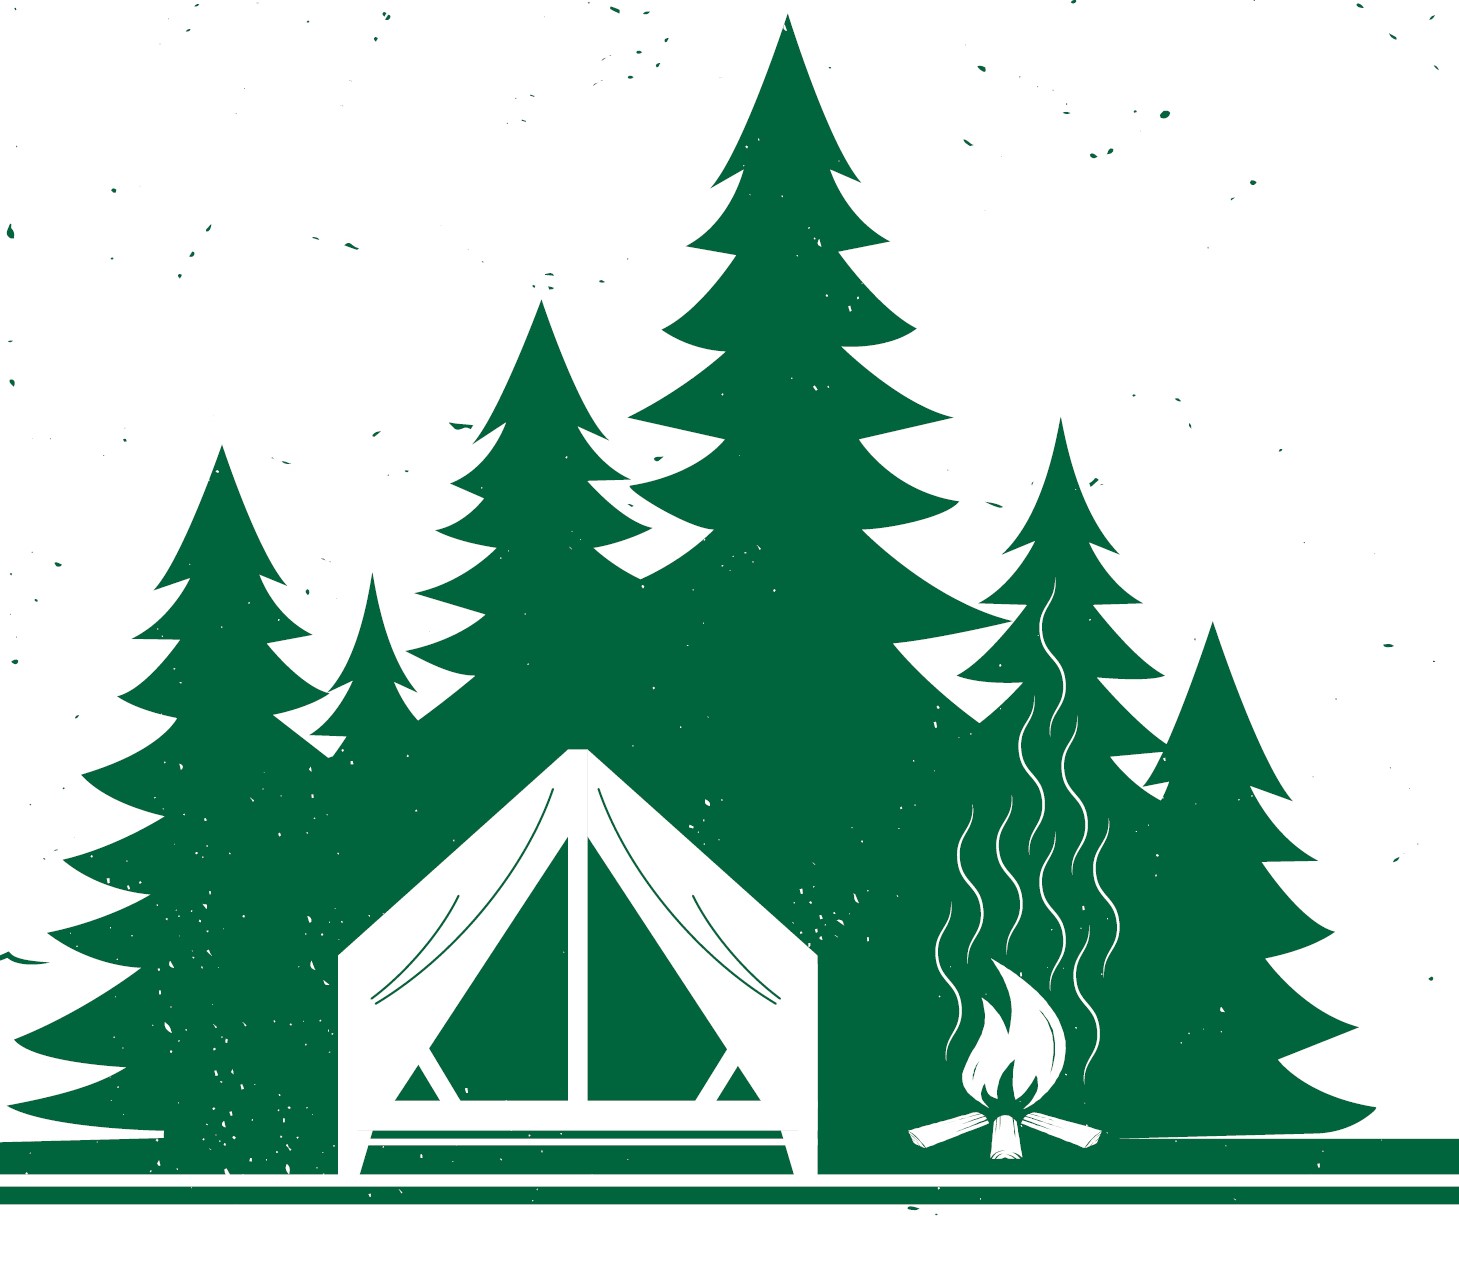 A design of pine tress, a platform tent, and a fire.